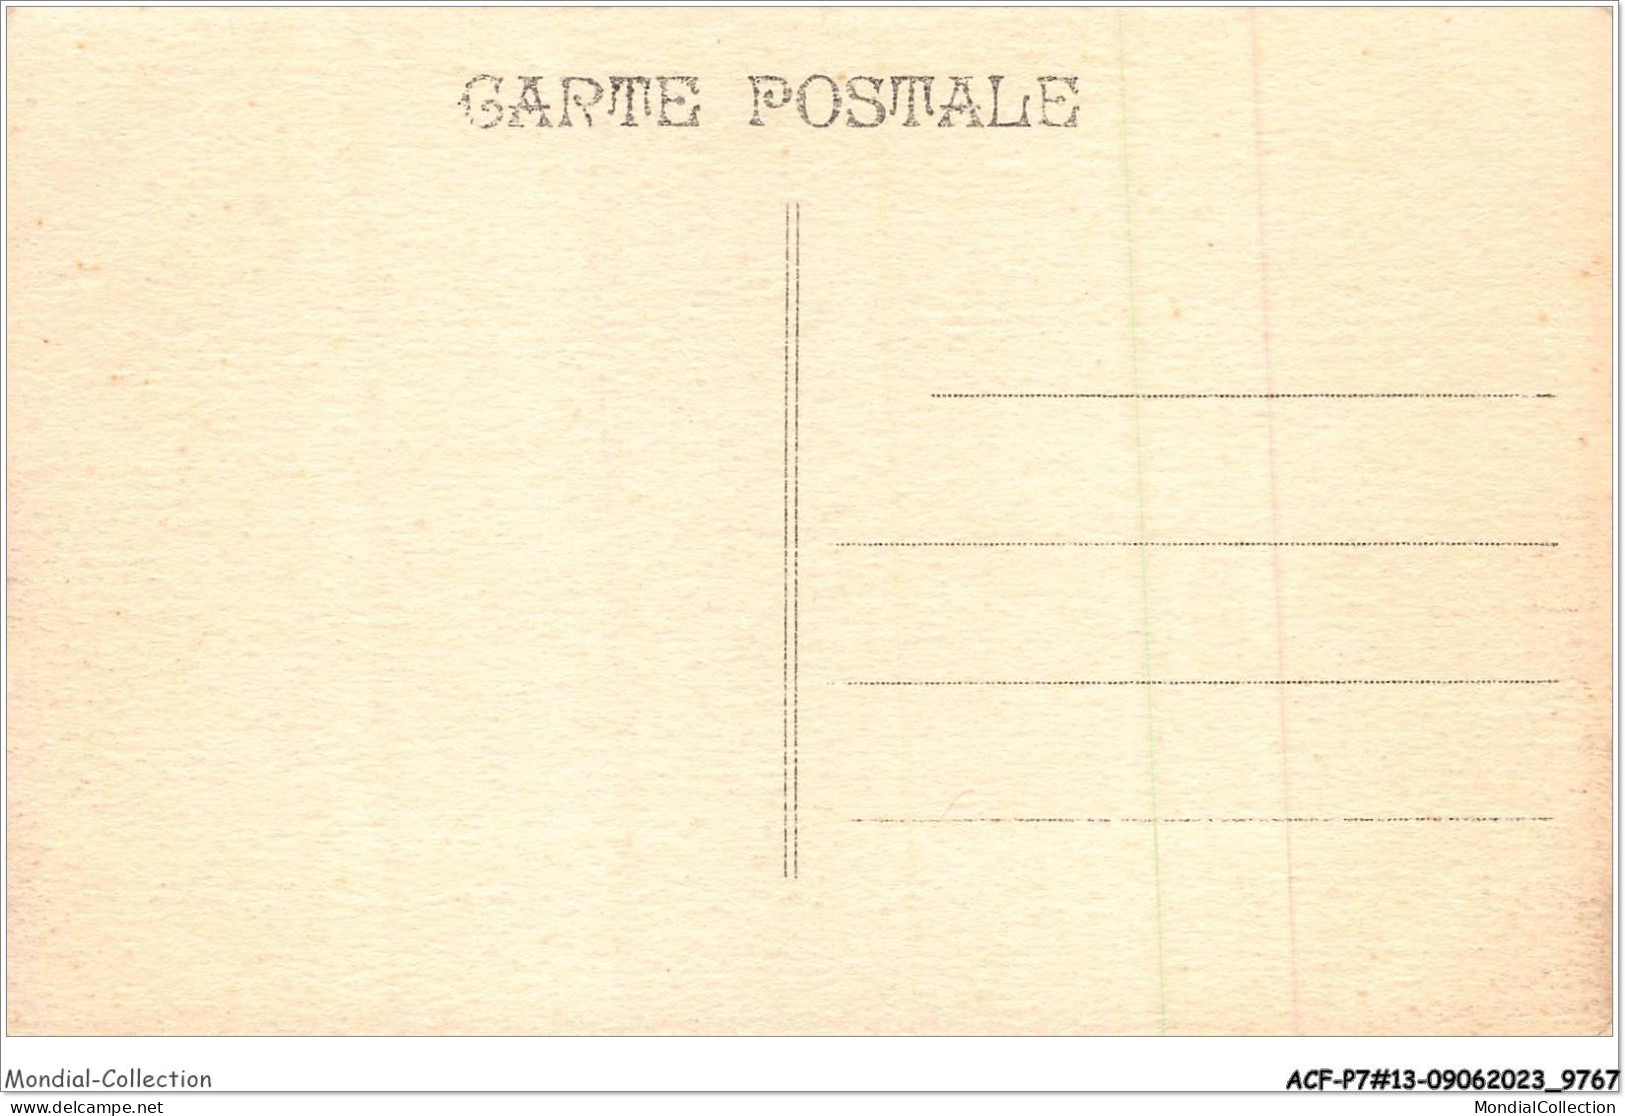 ACFP7-13-0601 - MARSEILLE - Palais Du Maroc  - Expositions Coloniales 1906 - 1922